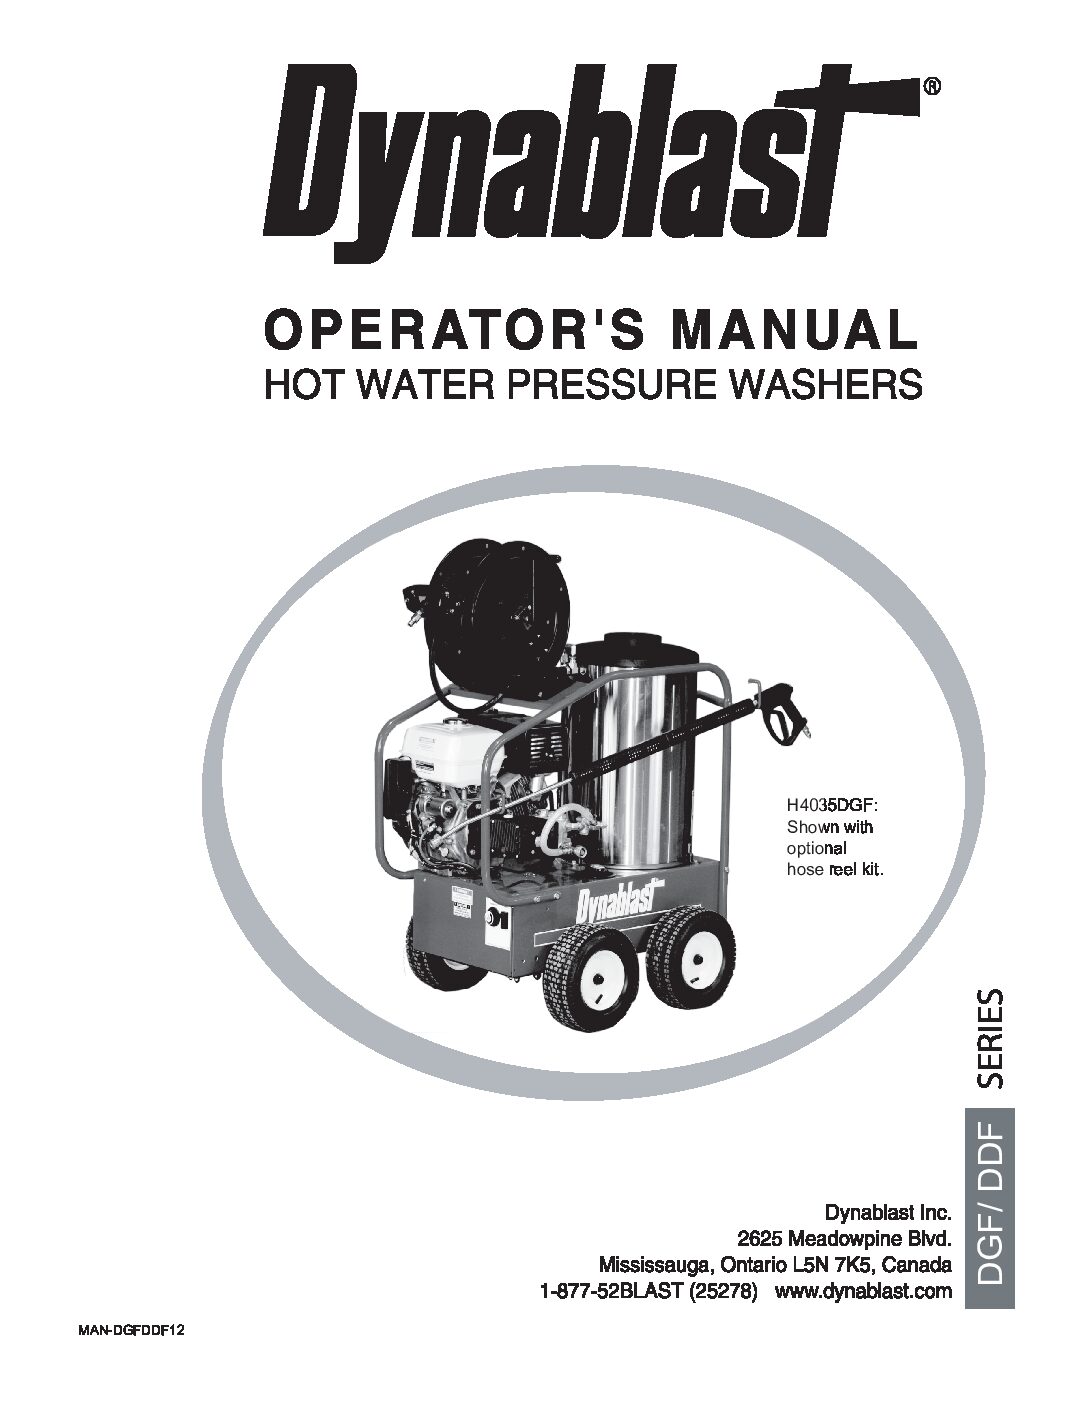 Dynablast HK4030DDF Hot Water Pressure Washer manual English